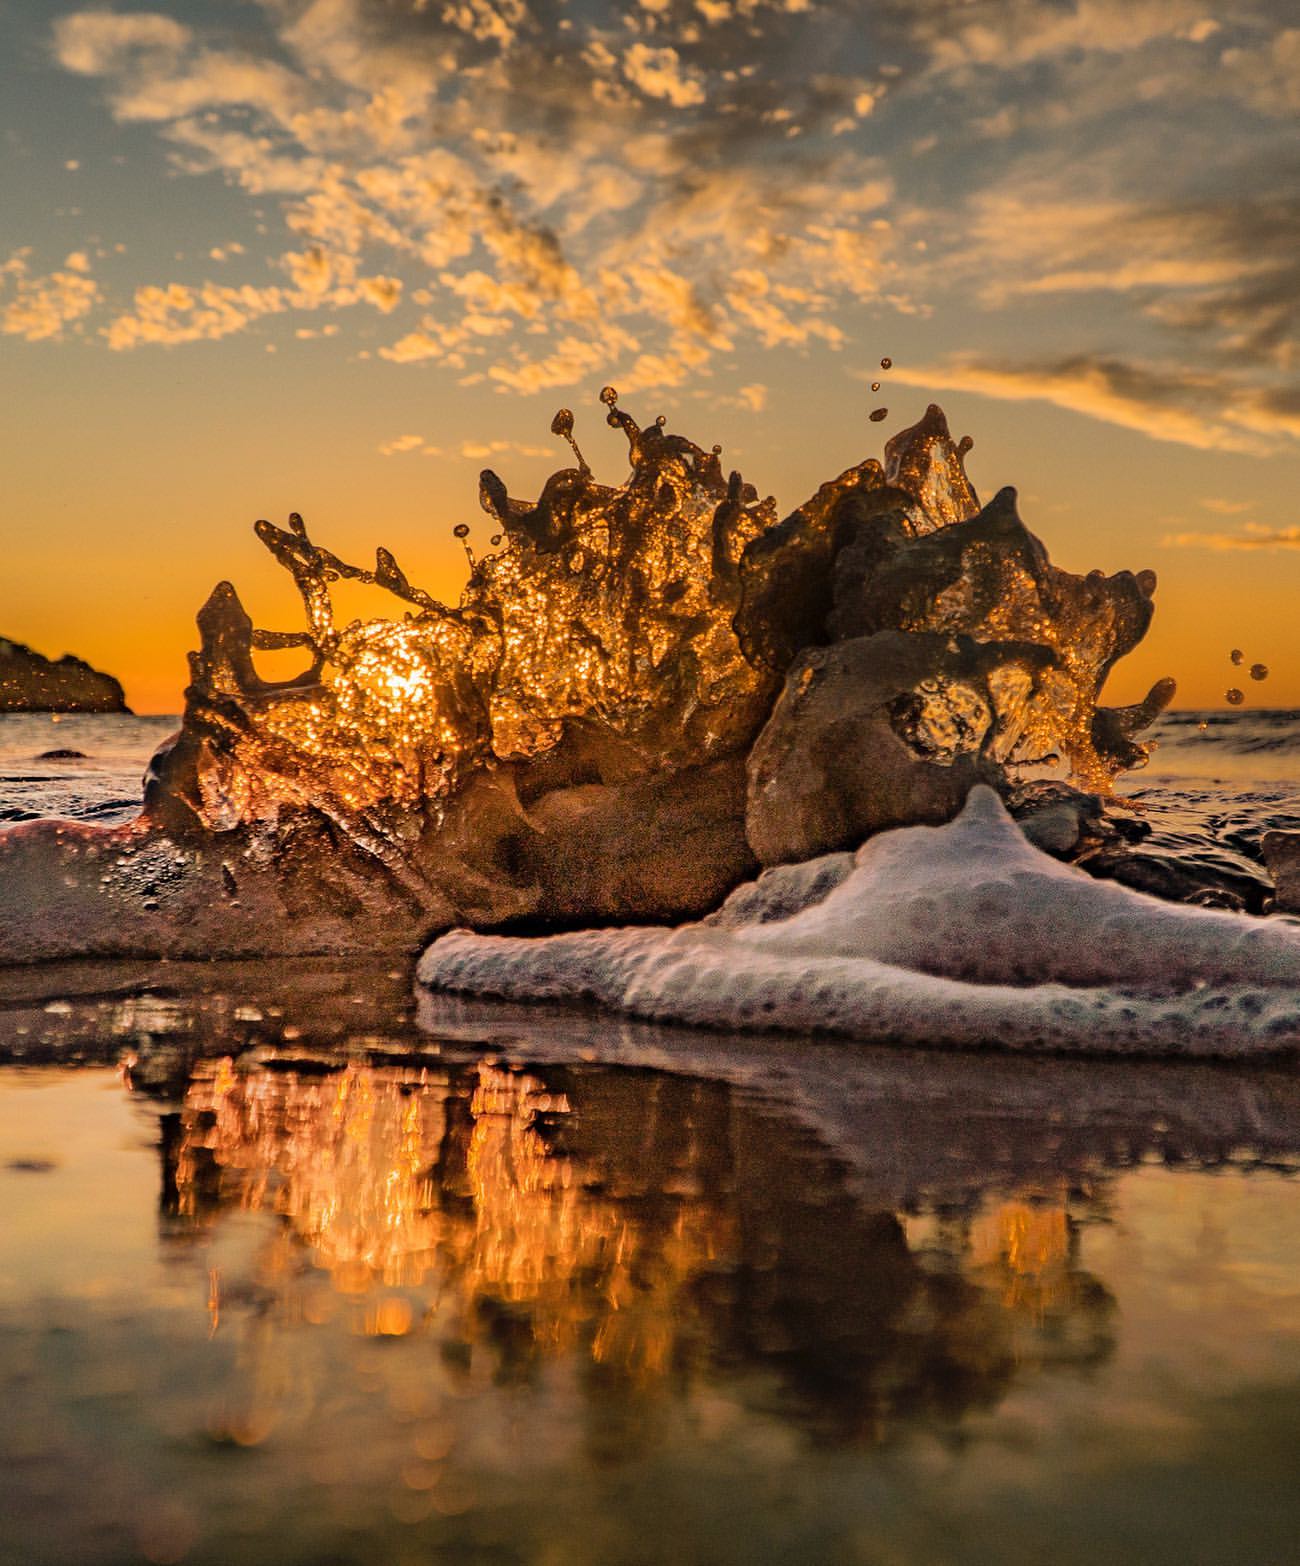 Фото Закат солнца над морем, by greghfoto